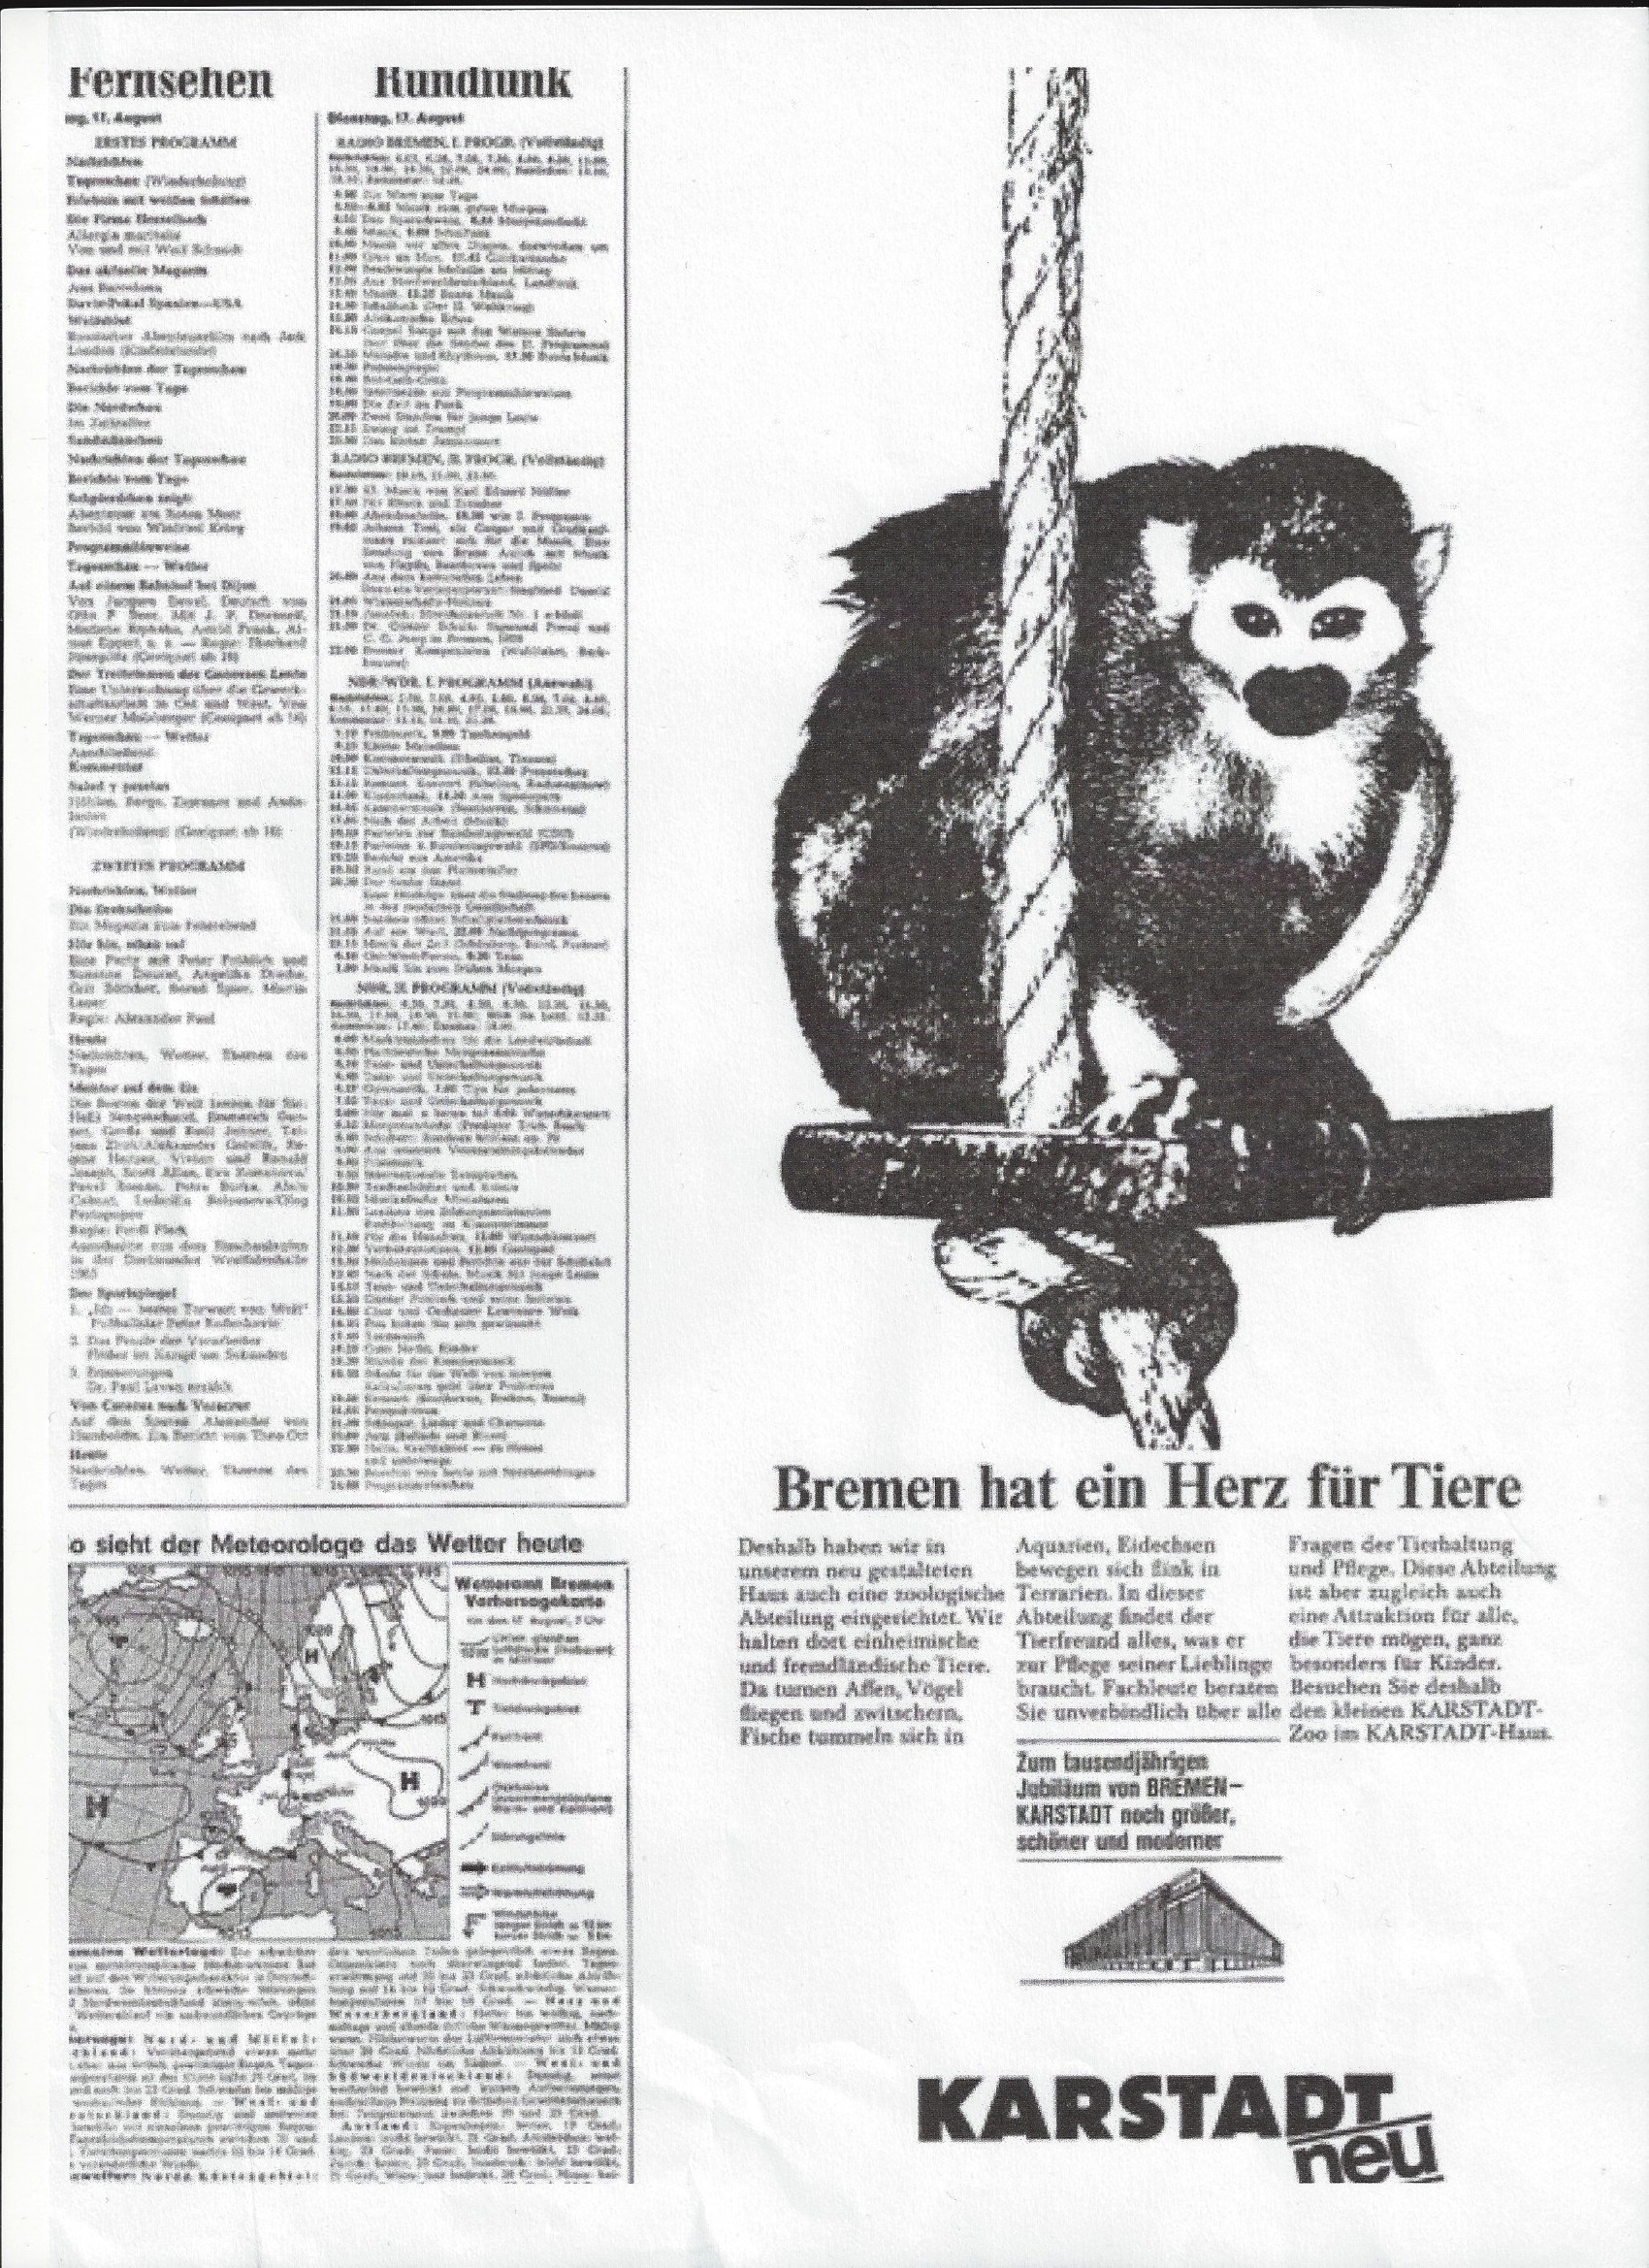 Affen als Werbeträger: Karstadt-Anzeige zur 1000-Jahr-Feier der Stadt Bremen im August 1965. Quelle: Archiv des Weser-Kuriers